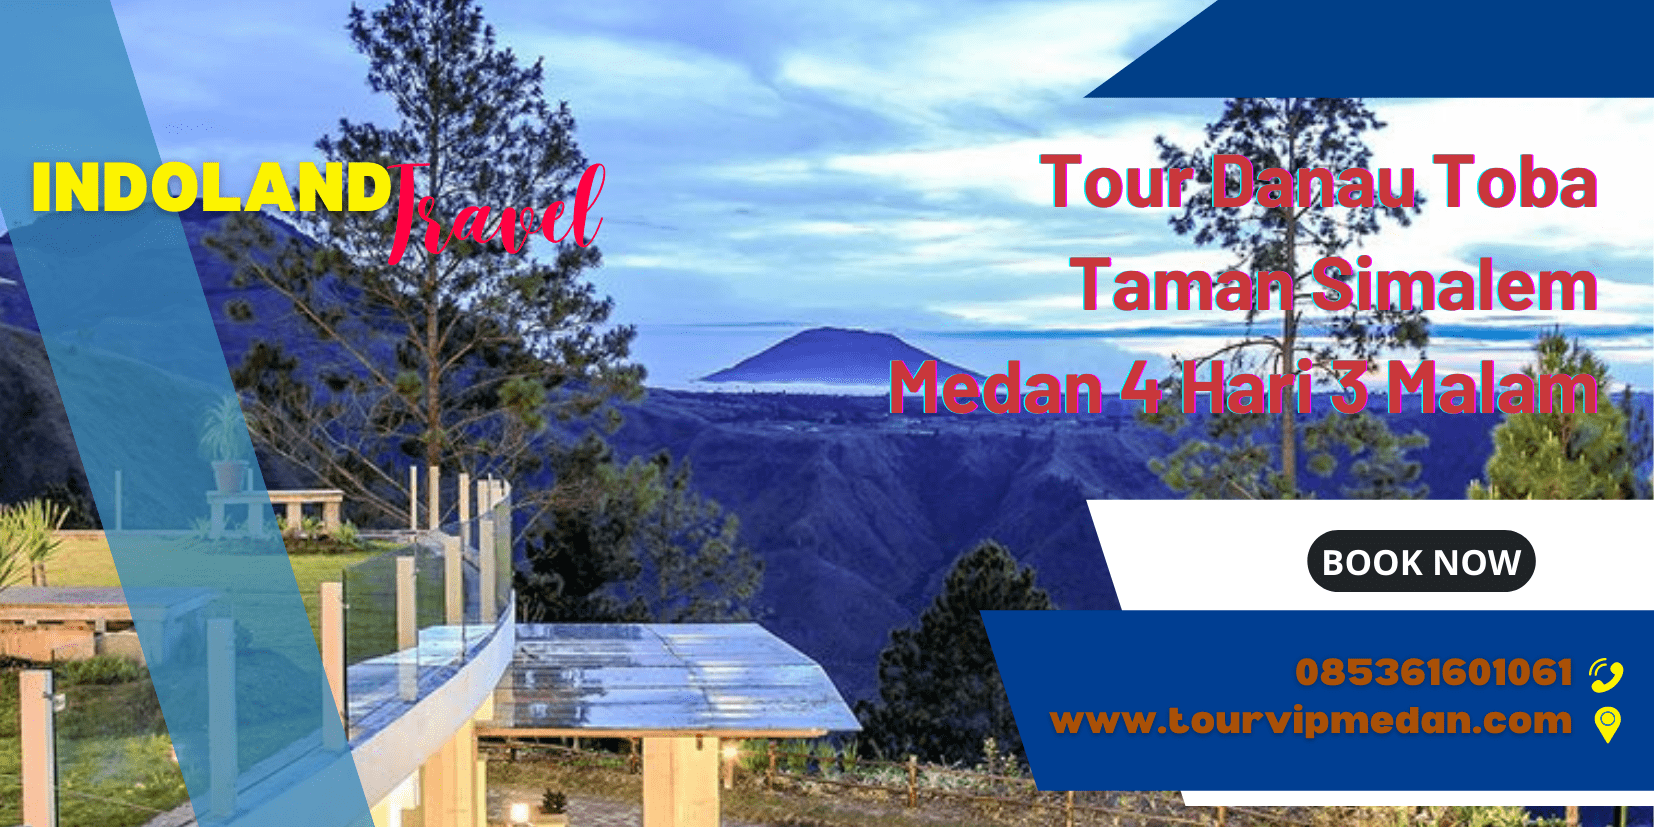 Tour Danau Toba Taman Simalem Medan 4 Hari 3 Malam